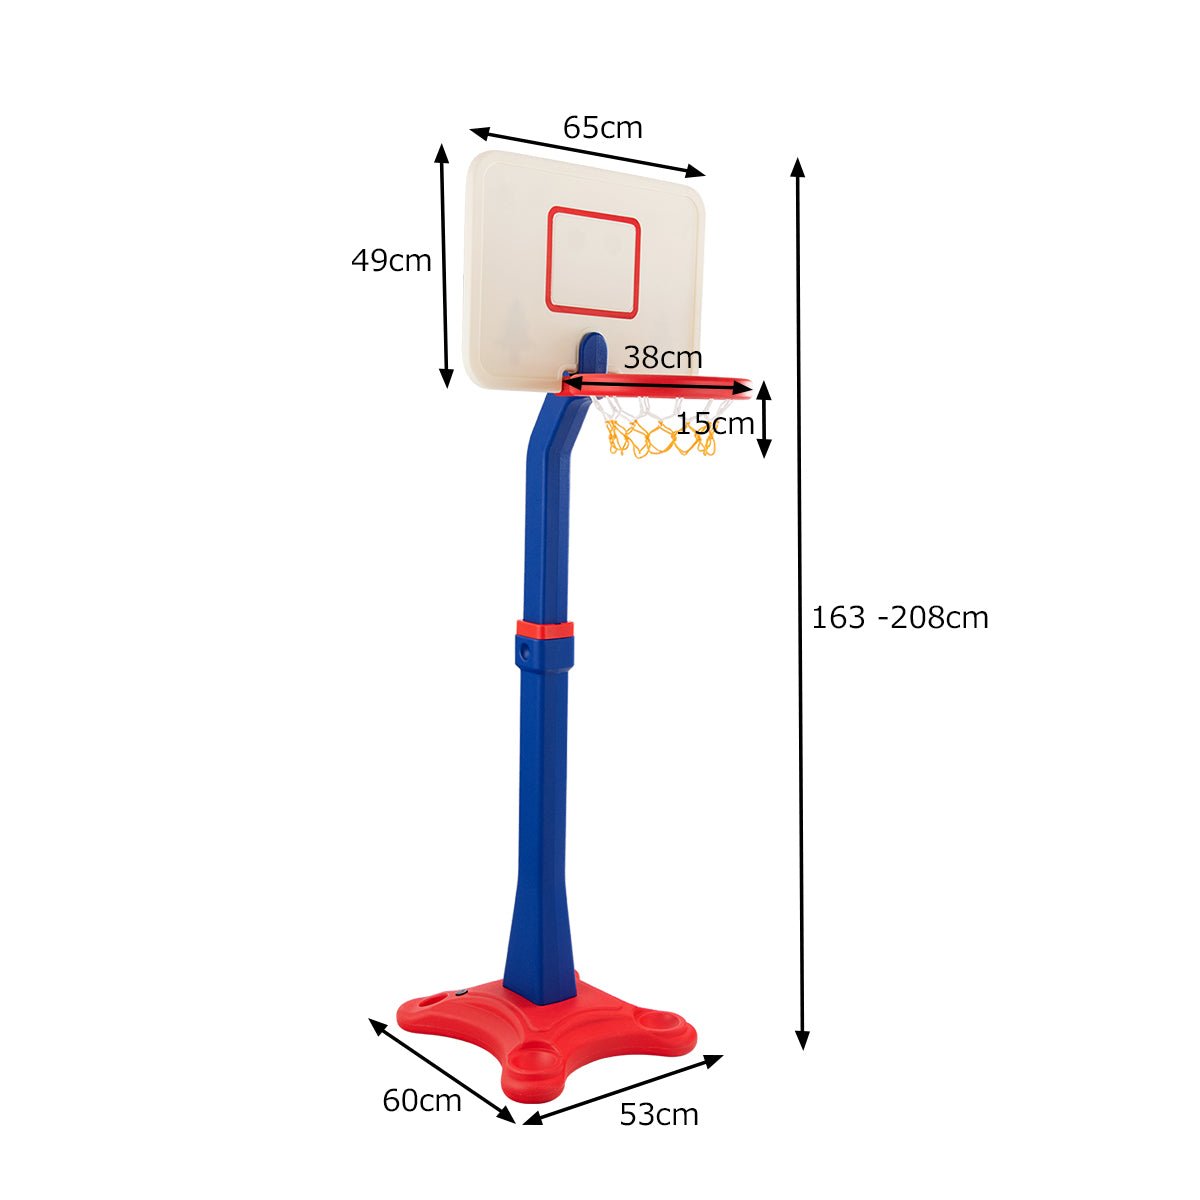 Adjustable Hoop Set: Height Adjustable Toddler Basketball Stand for Kids